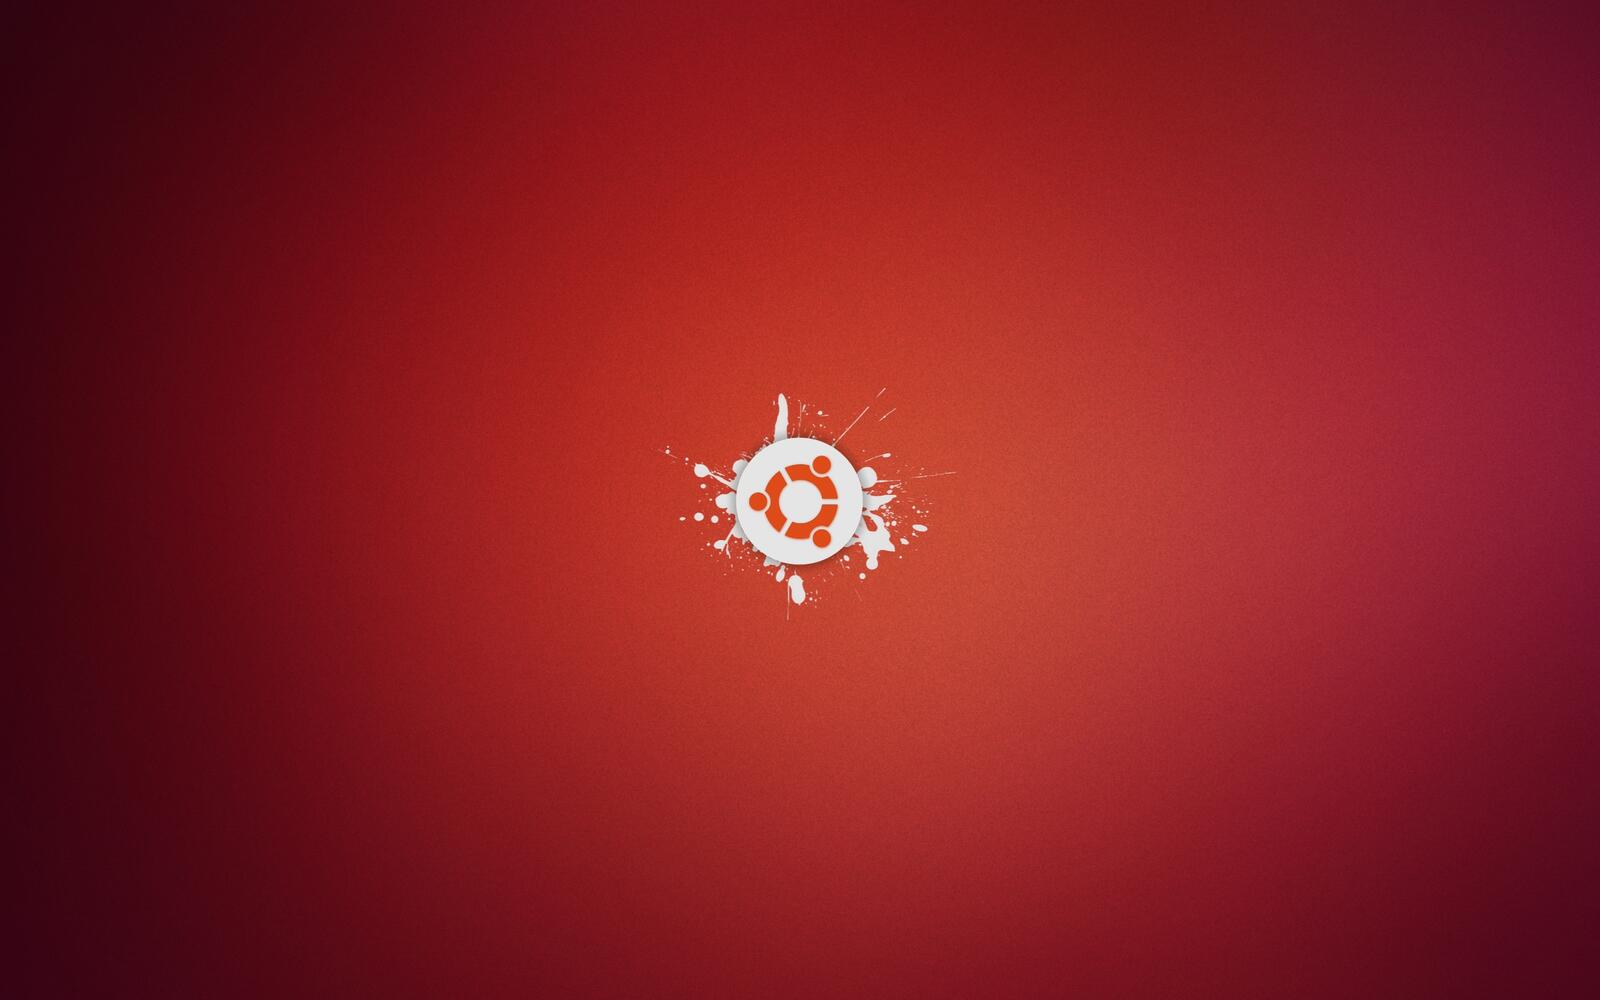 Free photo Ubuntu logo on a red background